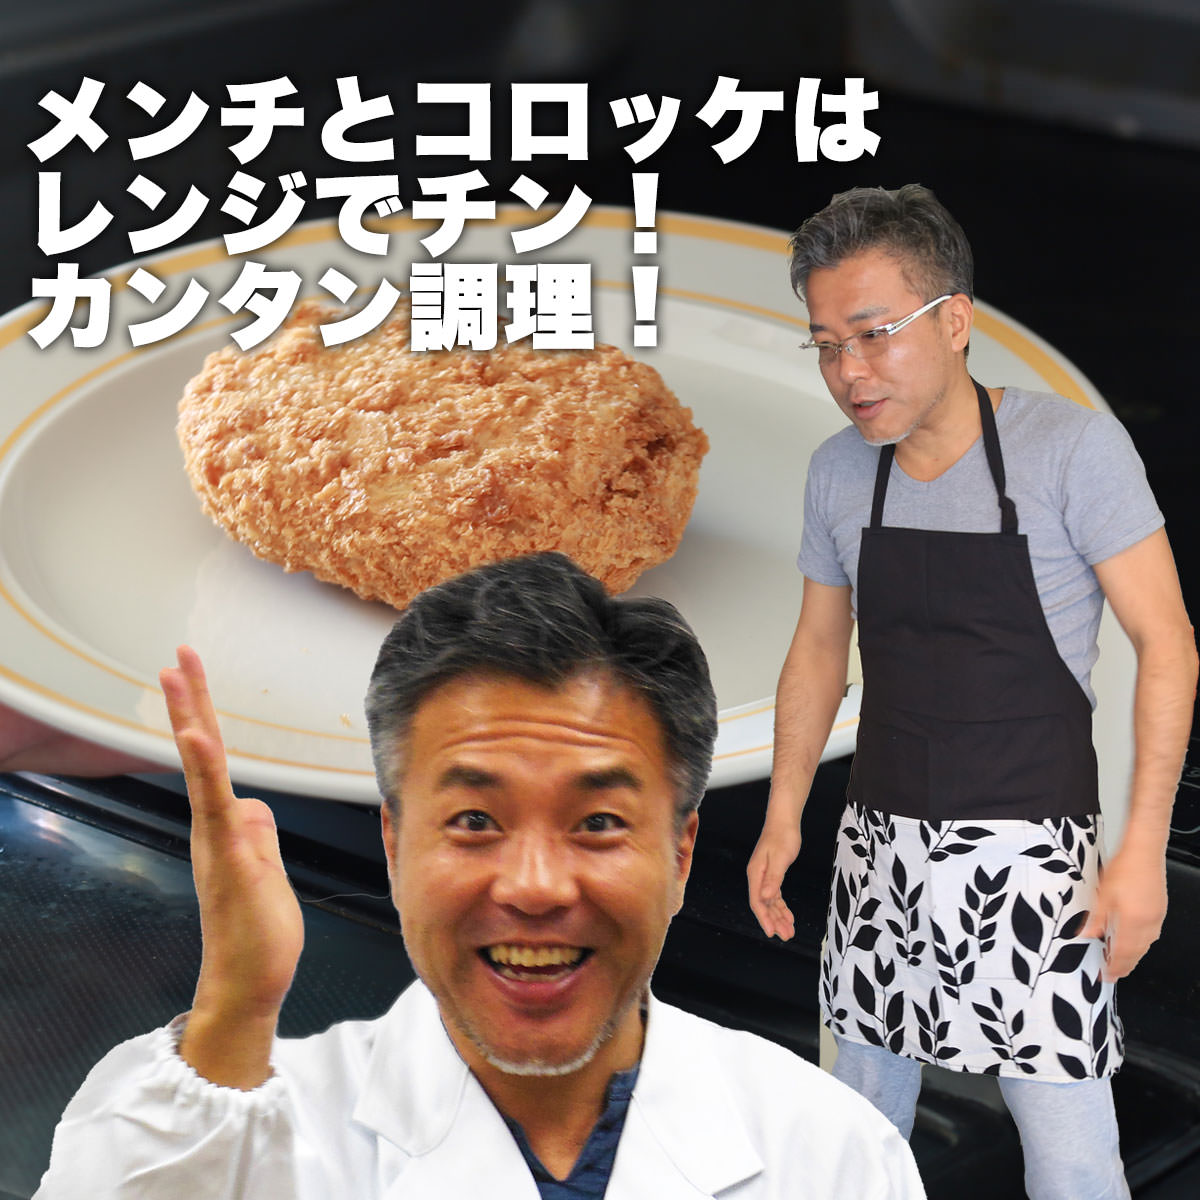 松阪牛お惣菜デラックス　Aセット